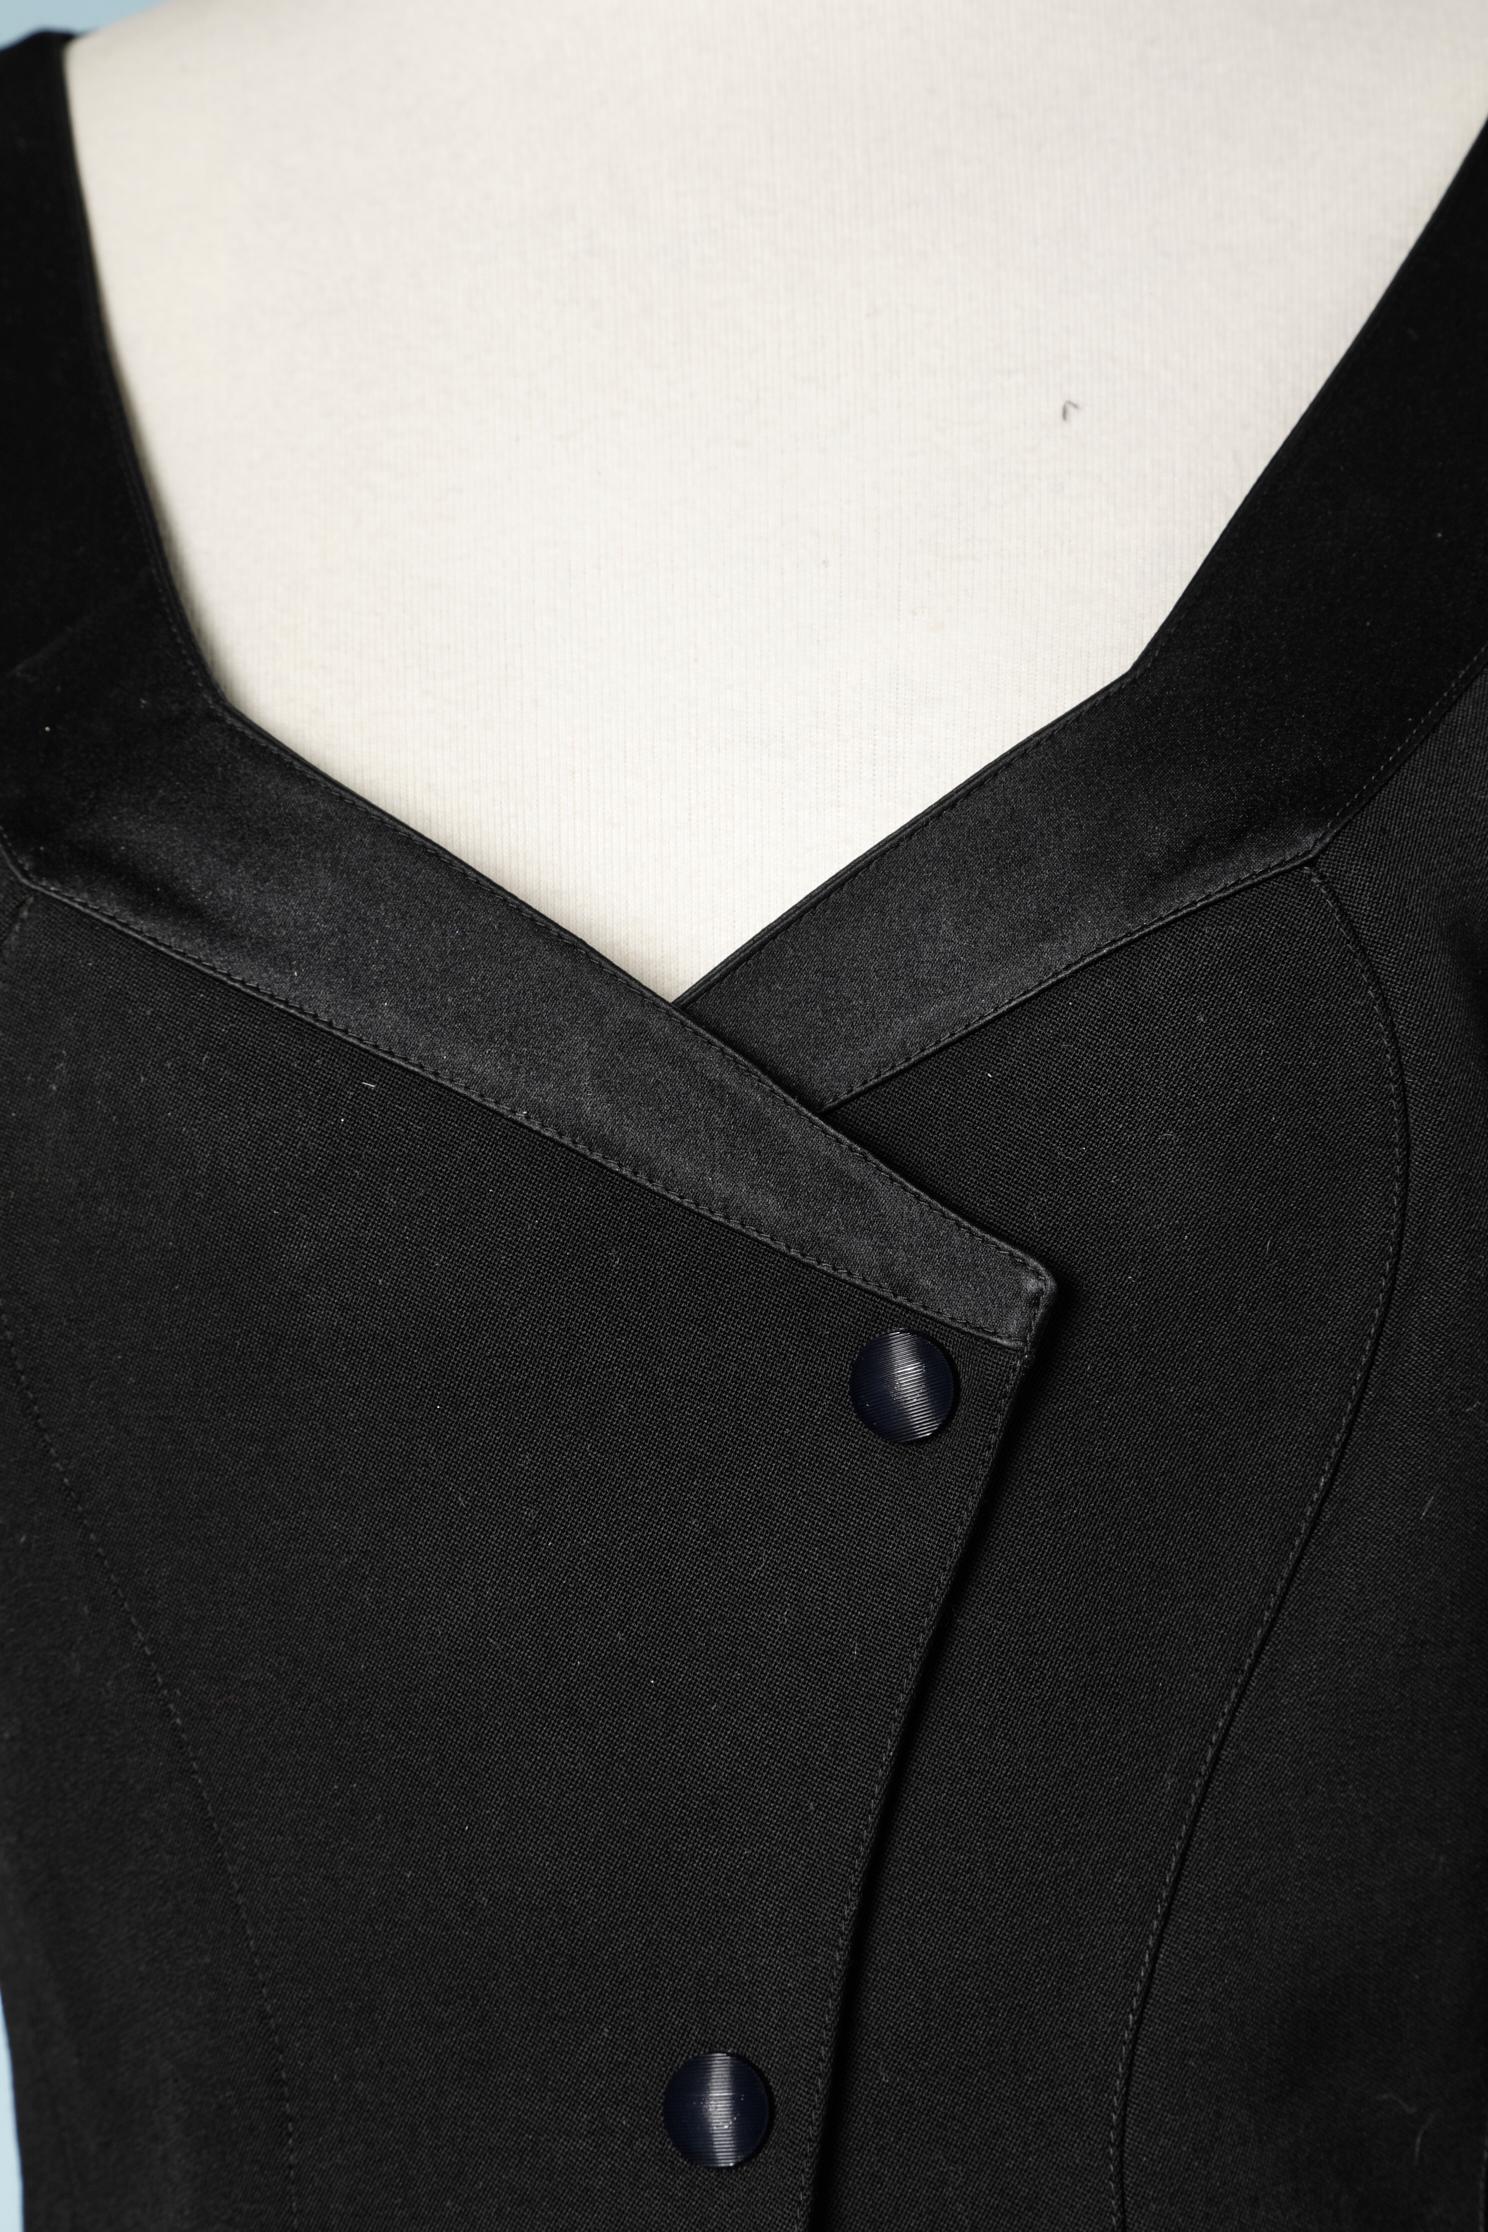 Combinaison-jupe en laine noire avec détails en satin noir.
Taille : 38 ( Fr) 8 ( Us)